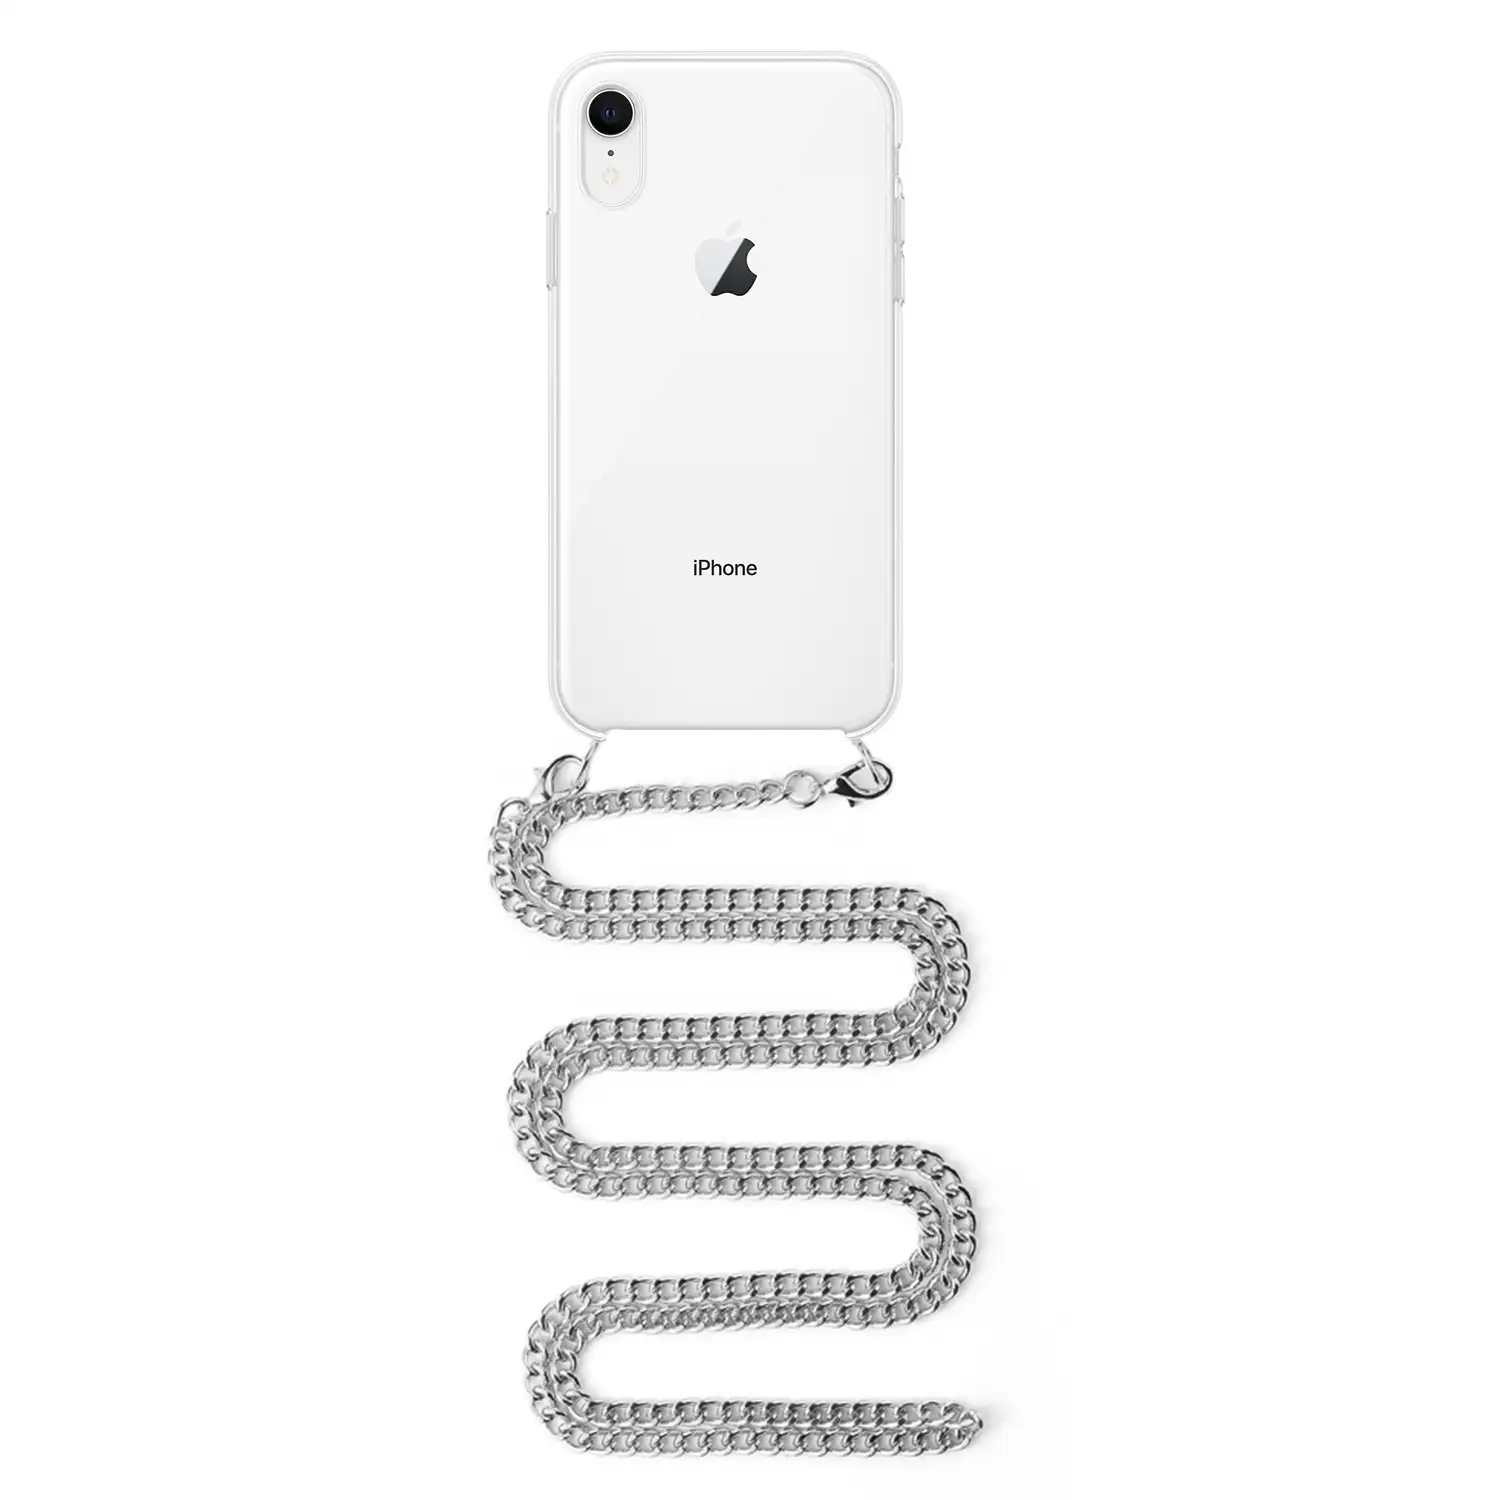 Carcasa transparente iPhone XR con colgante cadena metálica. Accesorio de moda, ajuste perfecto y máxima protección